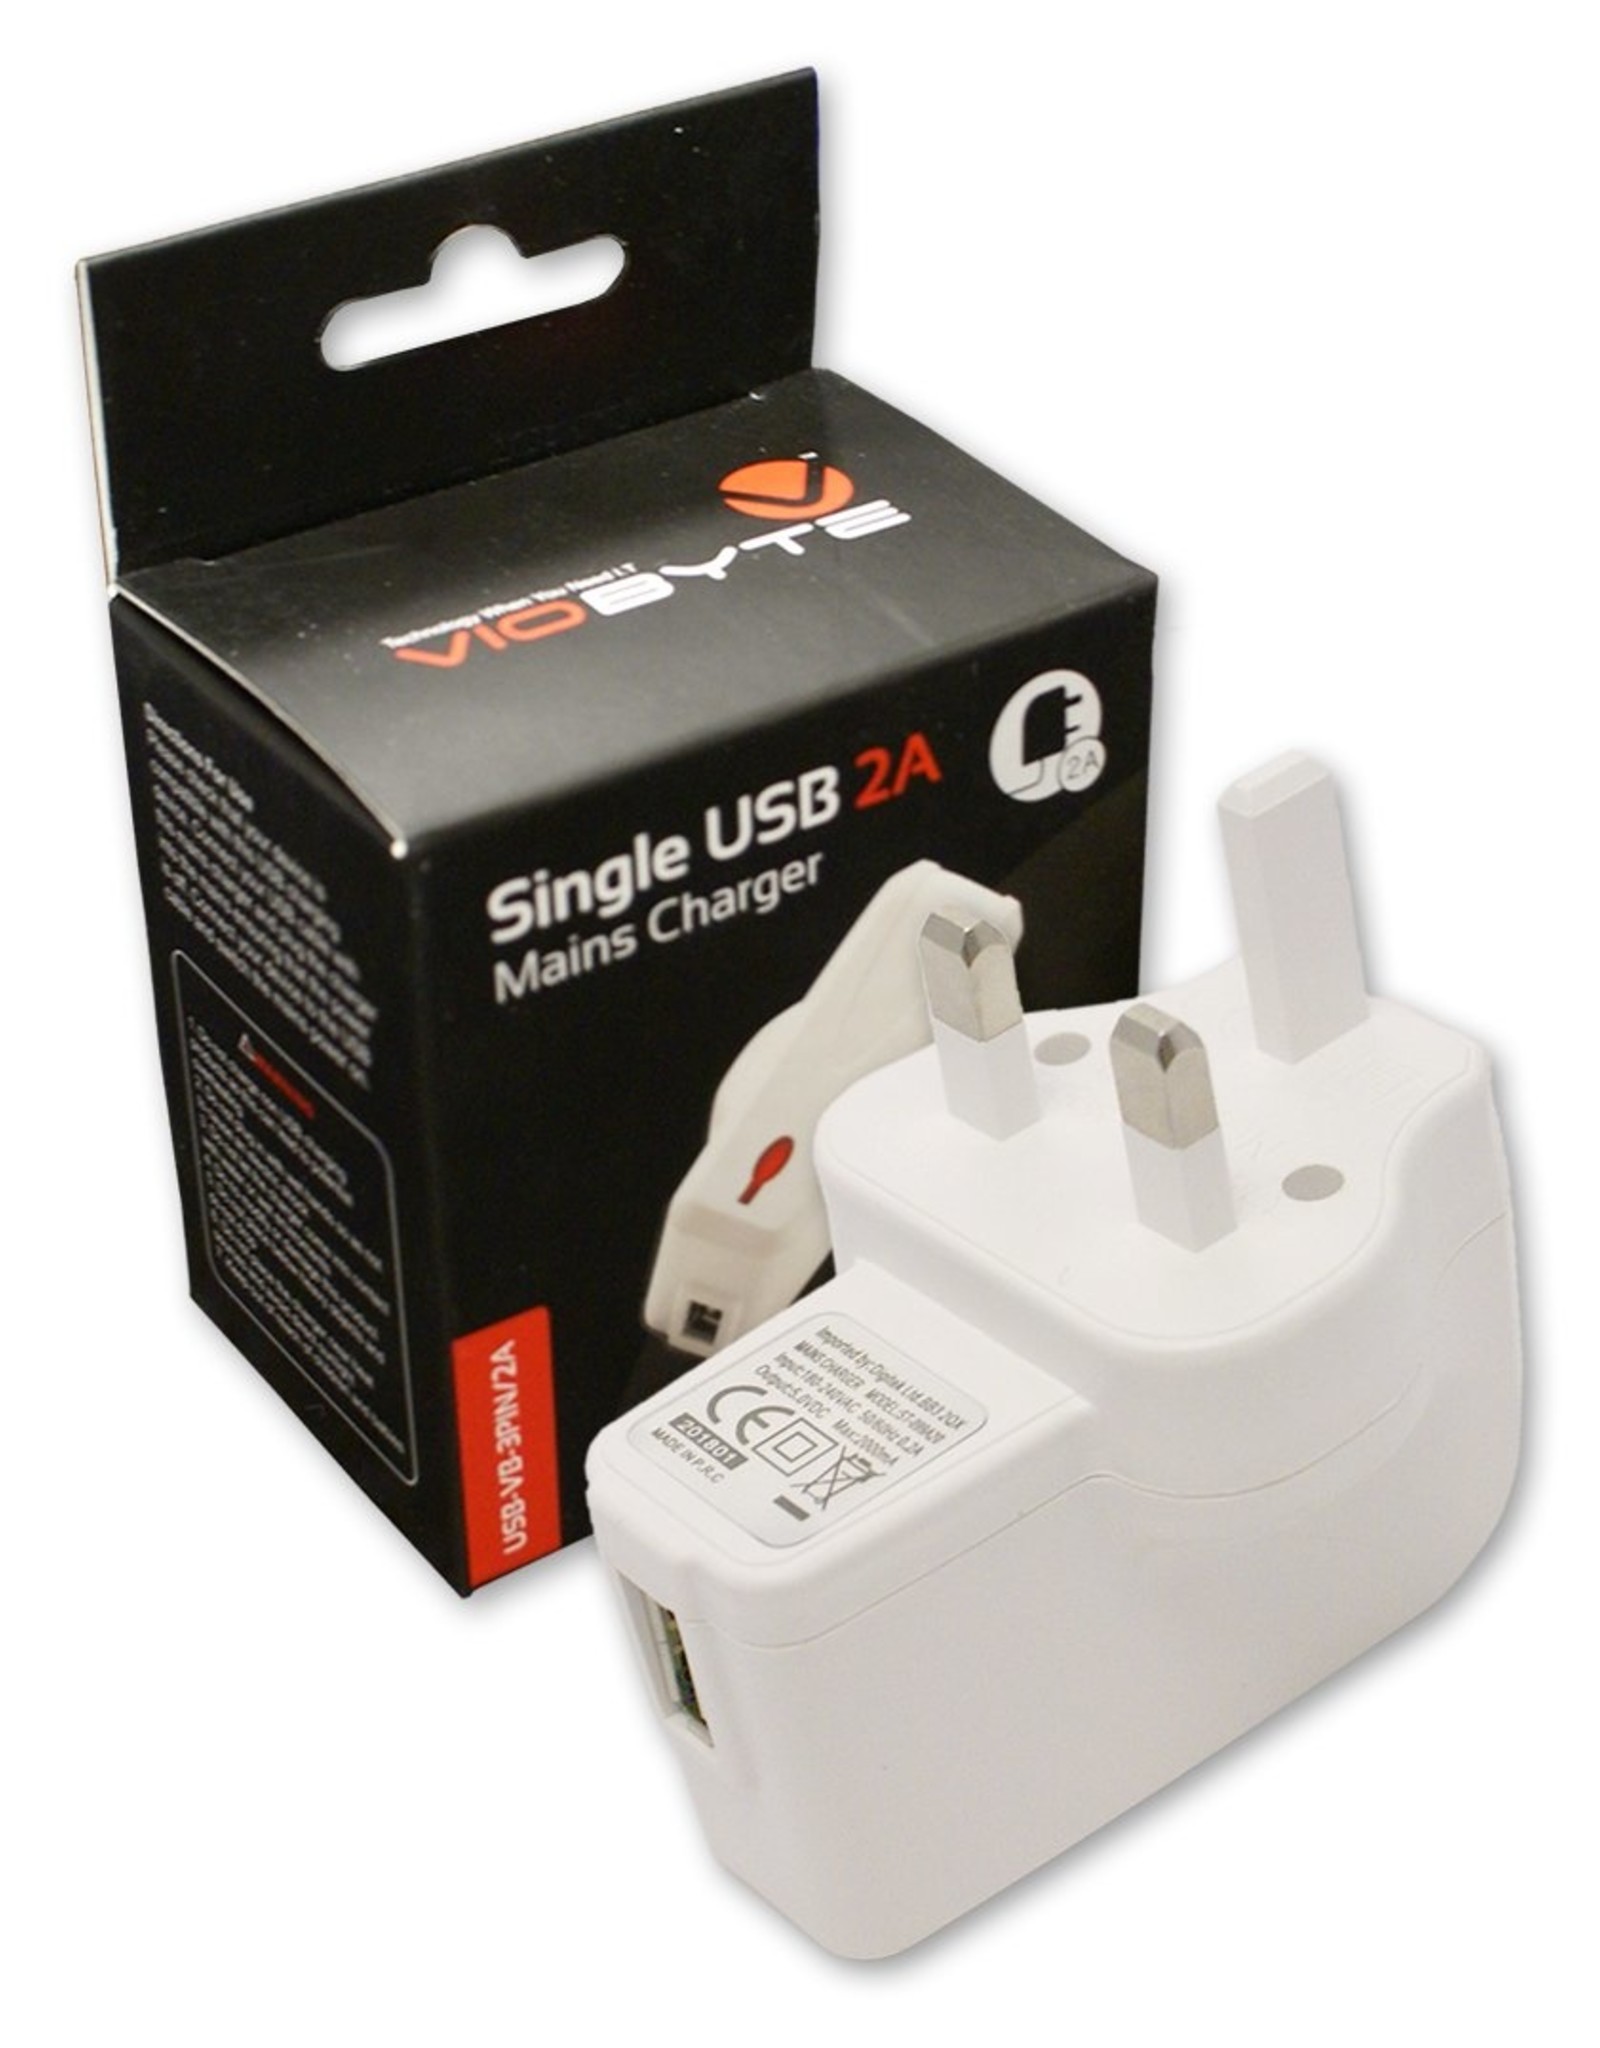 Viobyte Viobyte single USB 2A mains charger